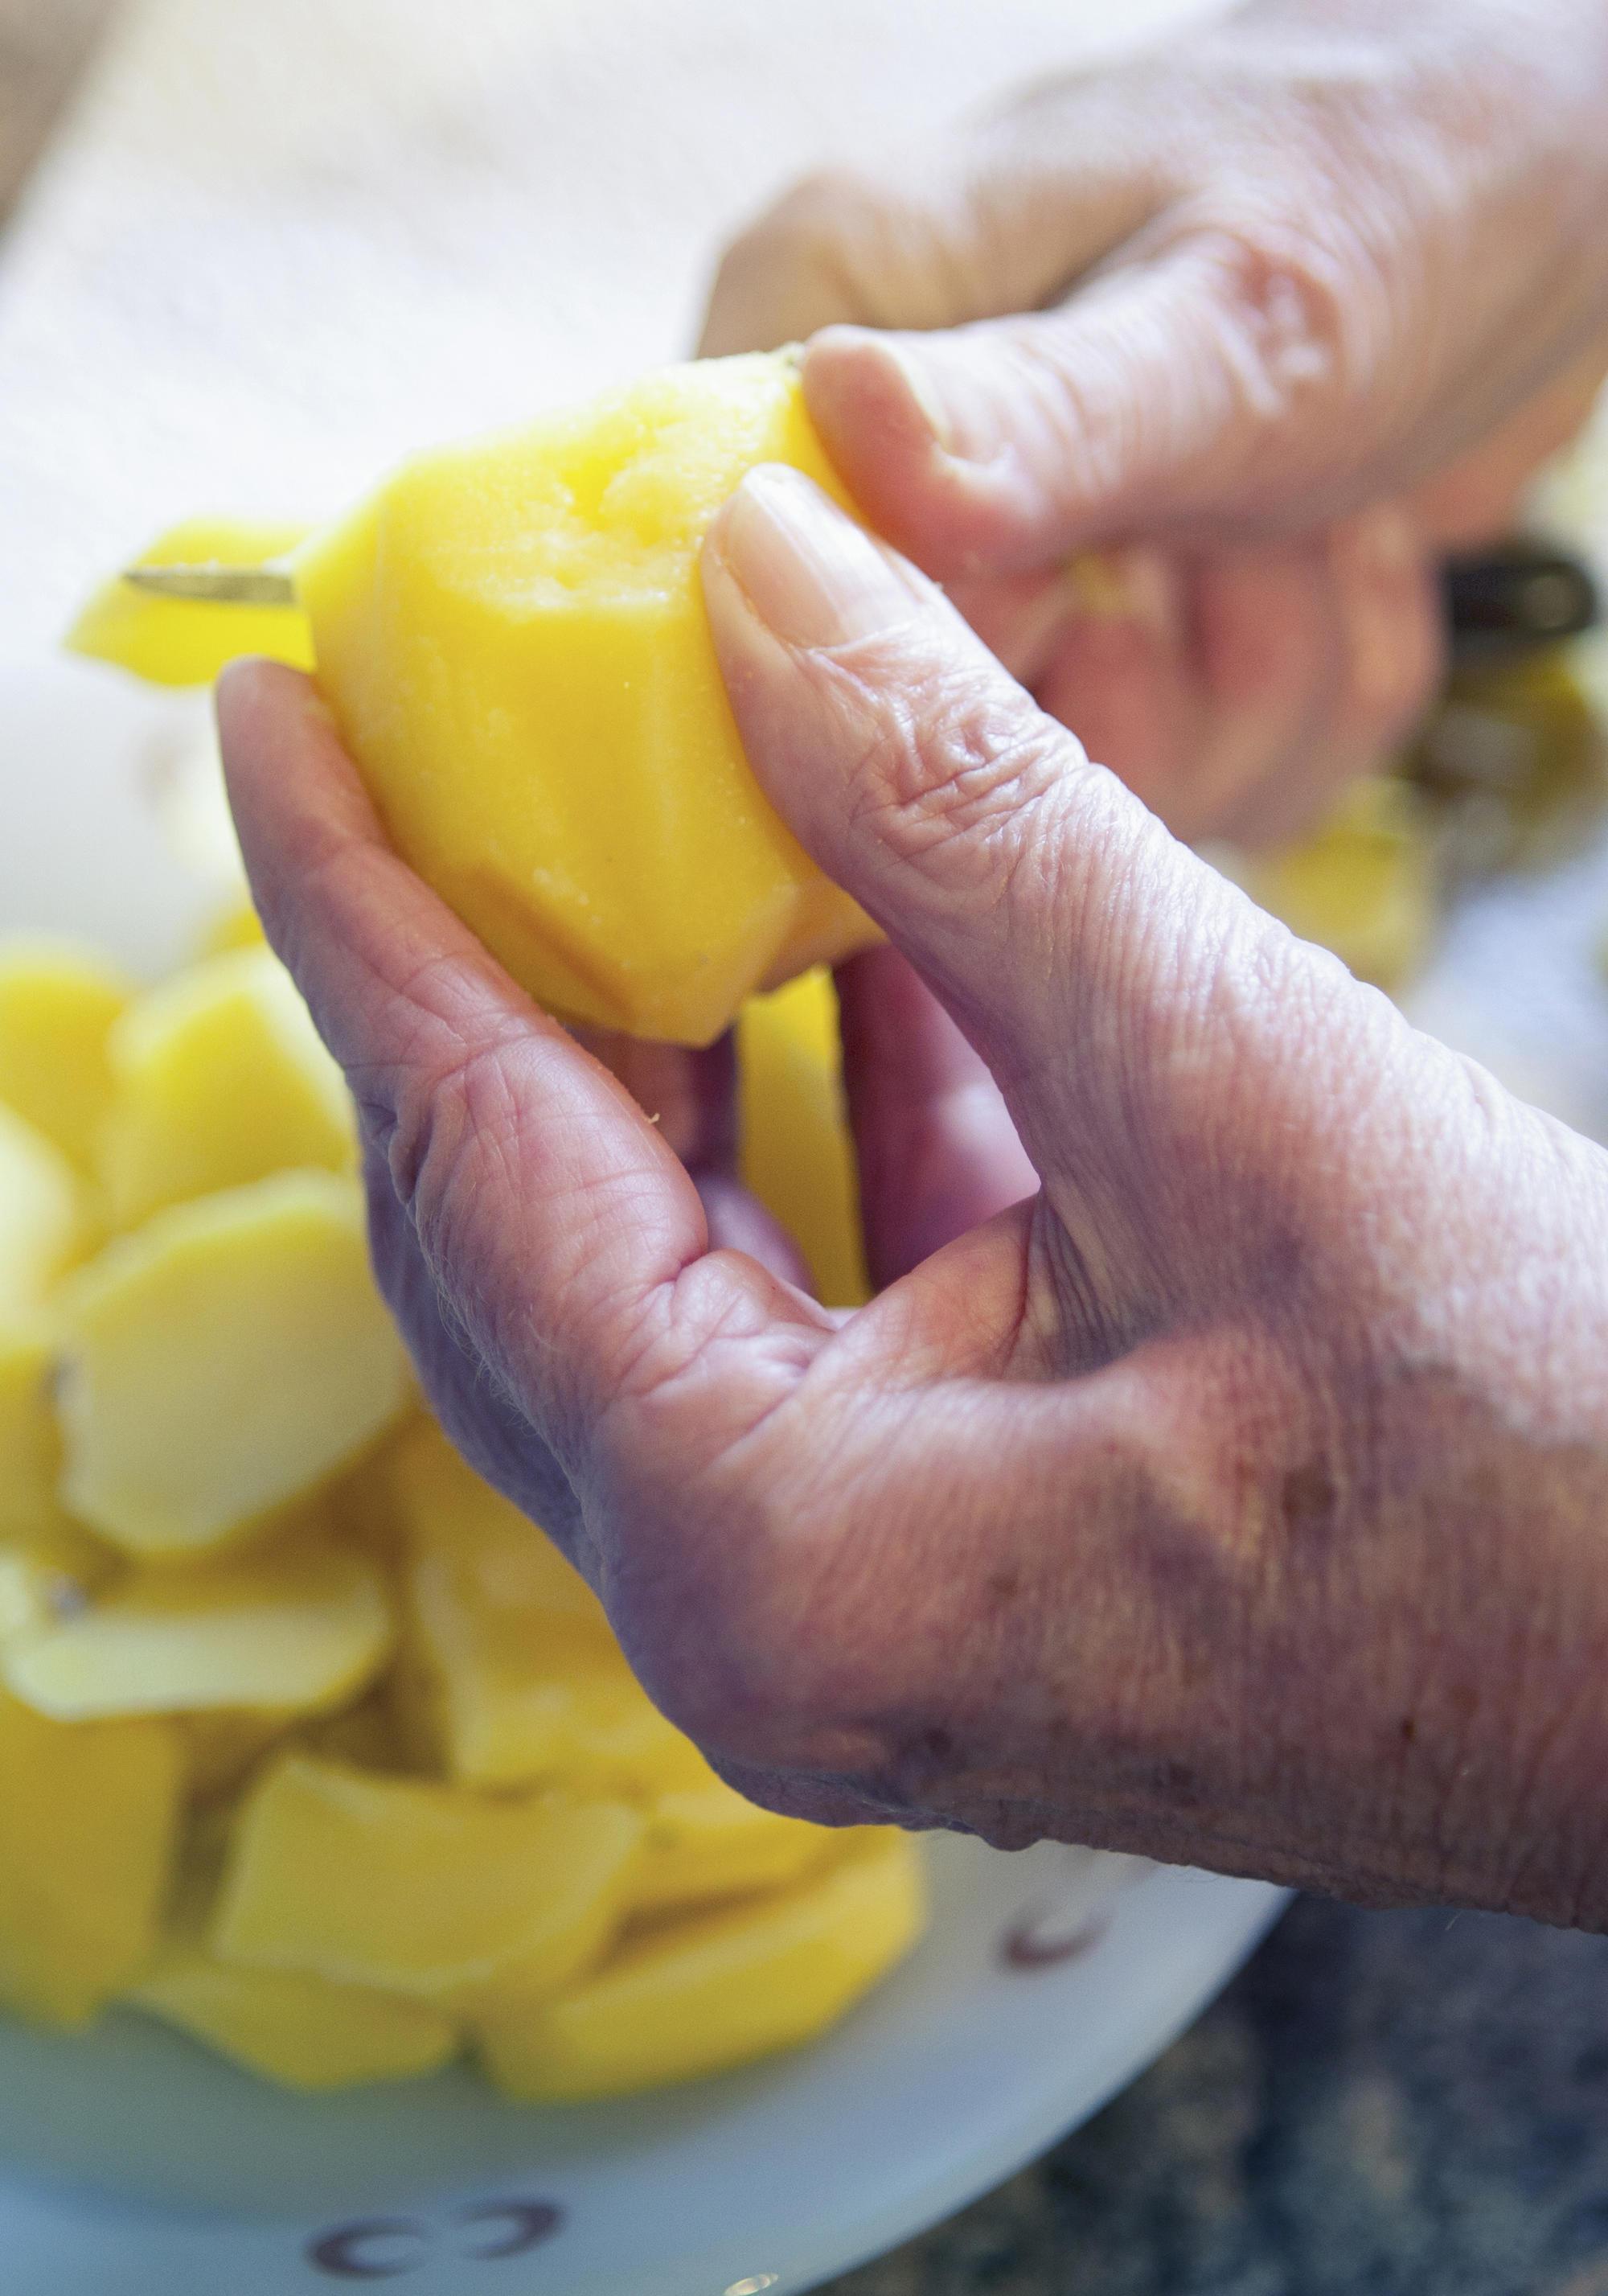 older hands slicing potato